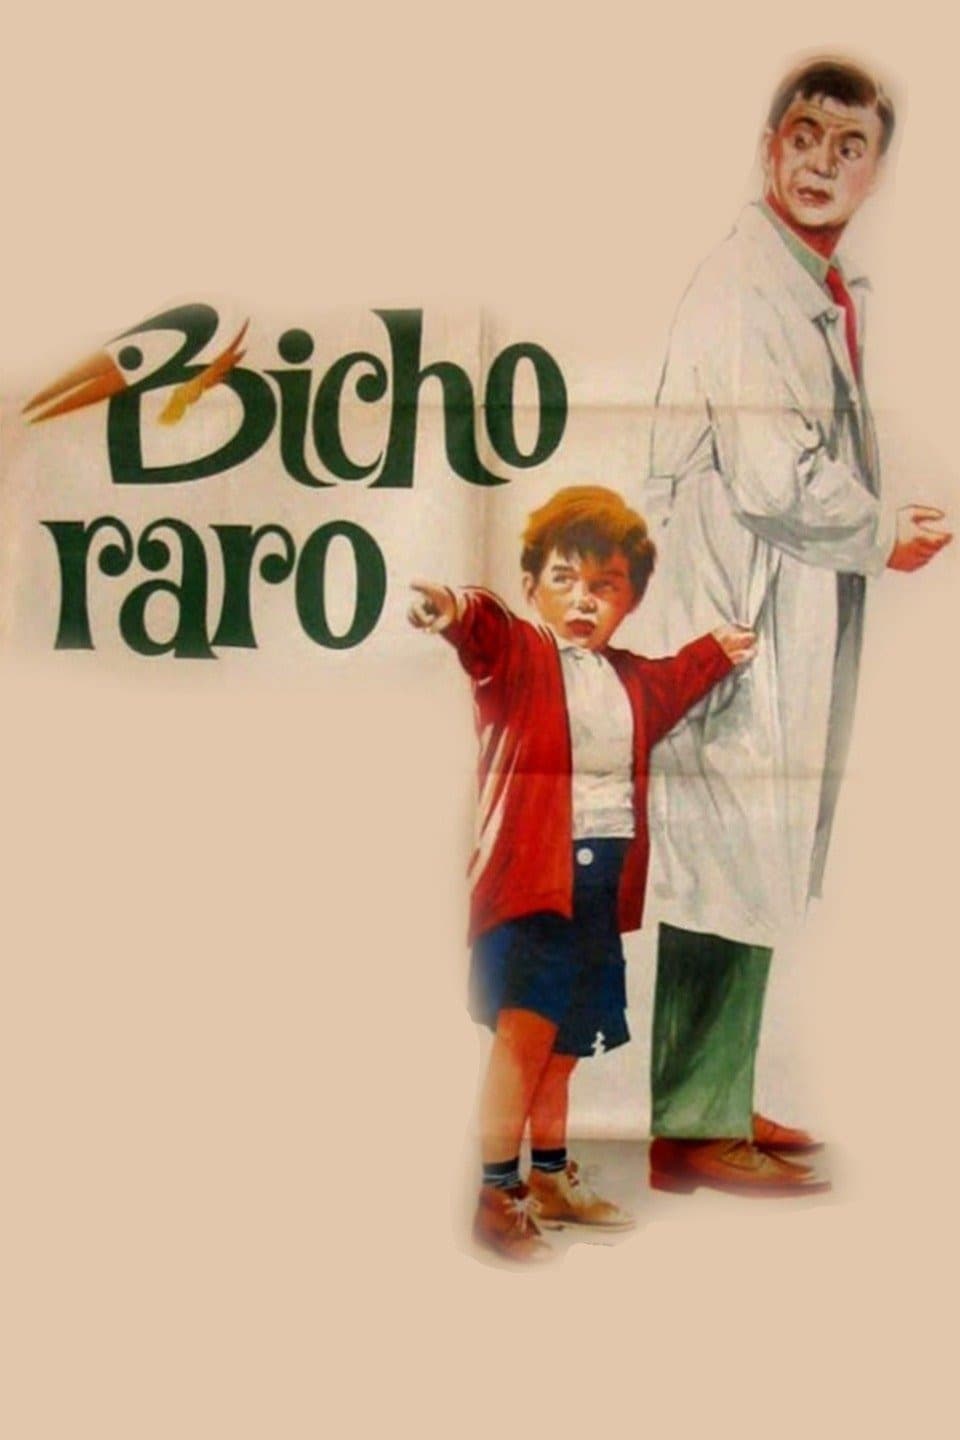 Bicho raro (1965)